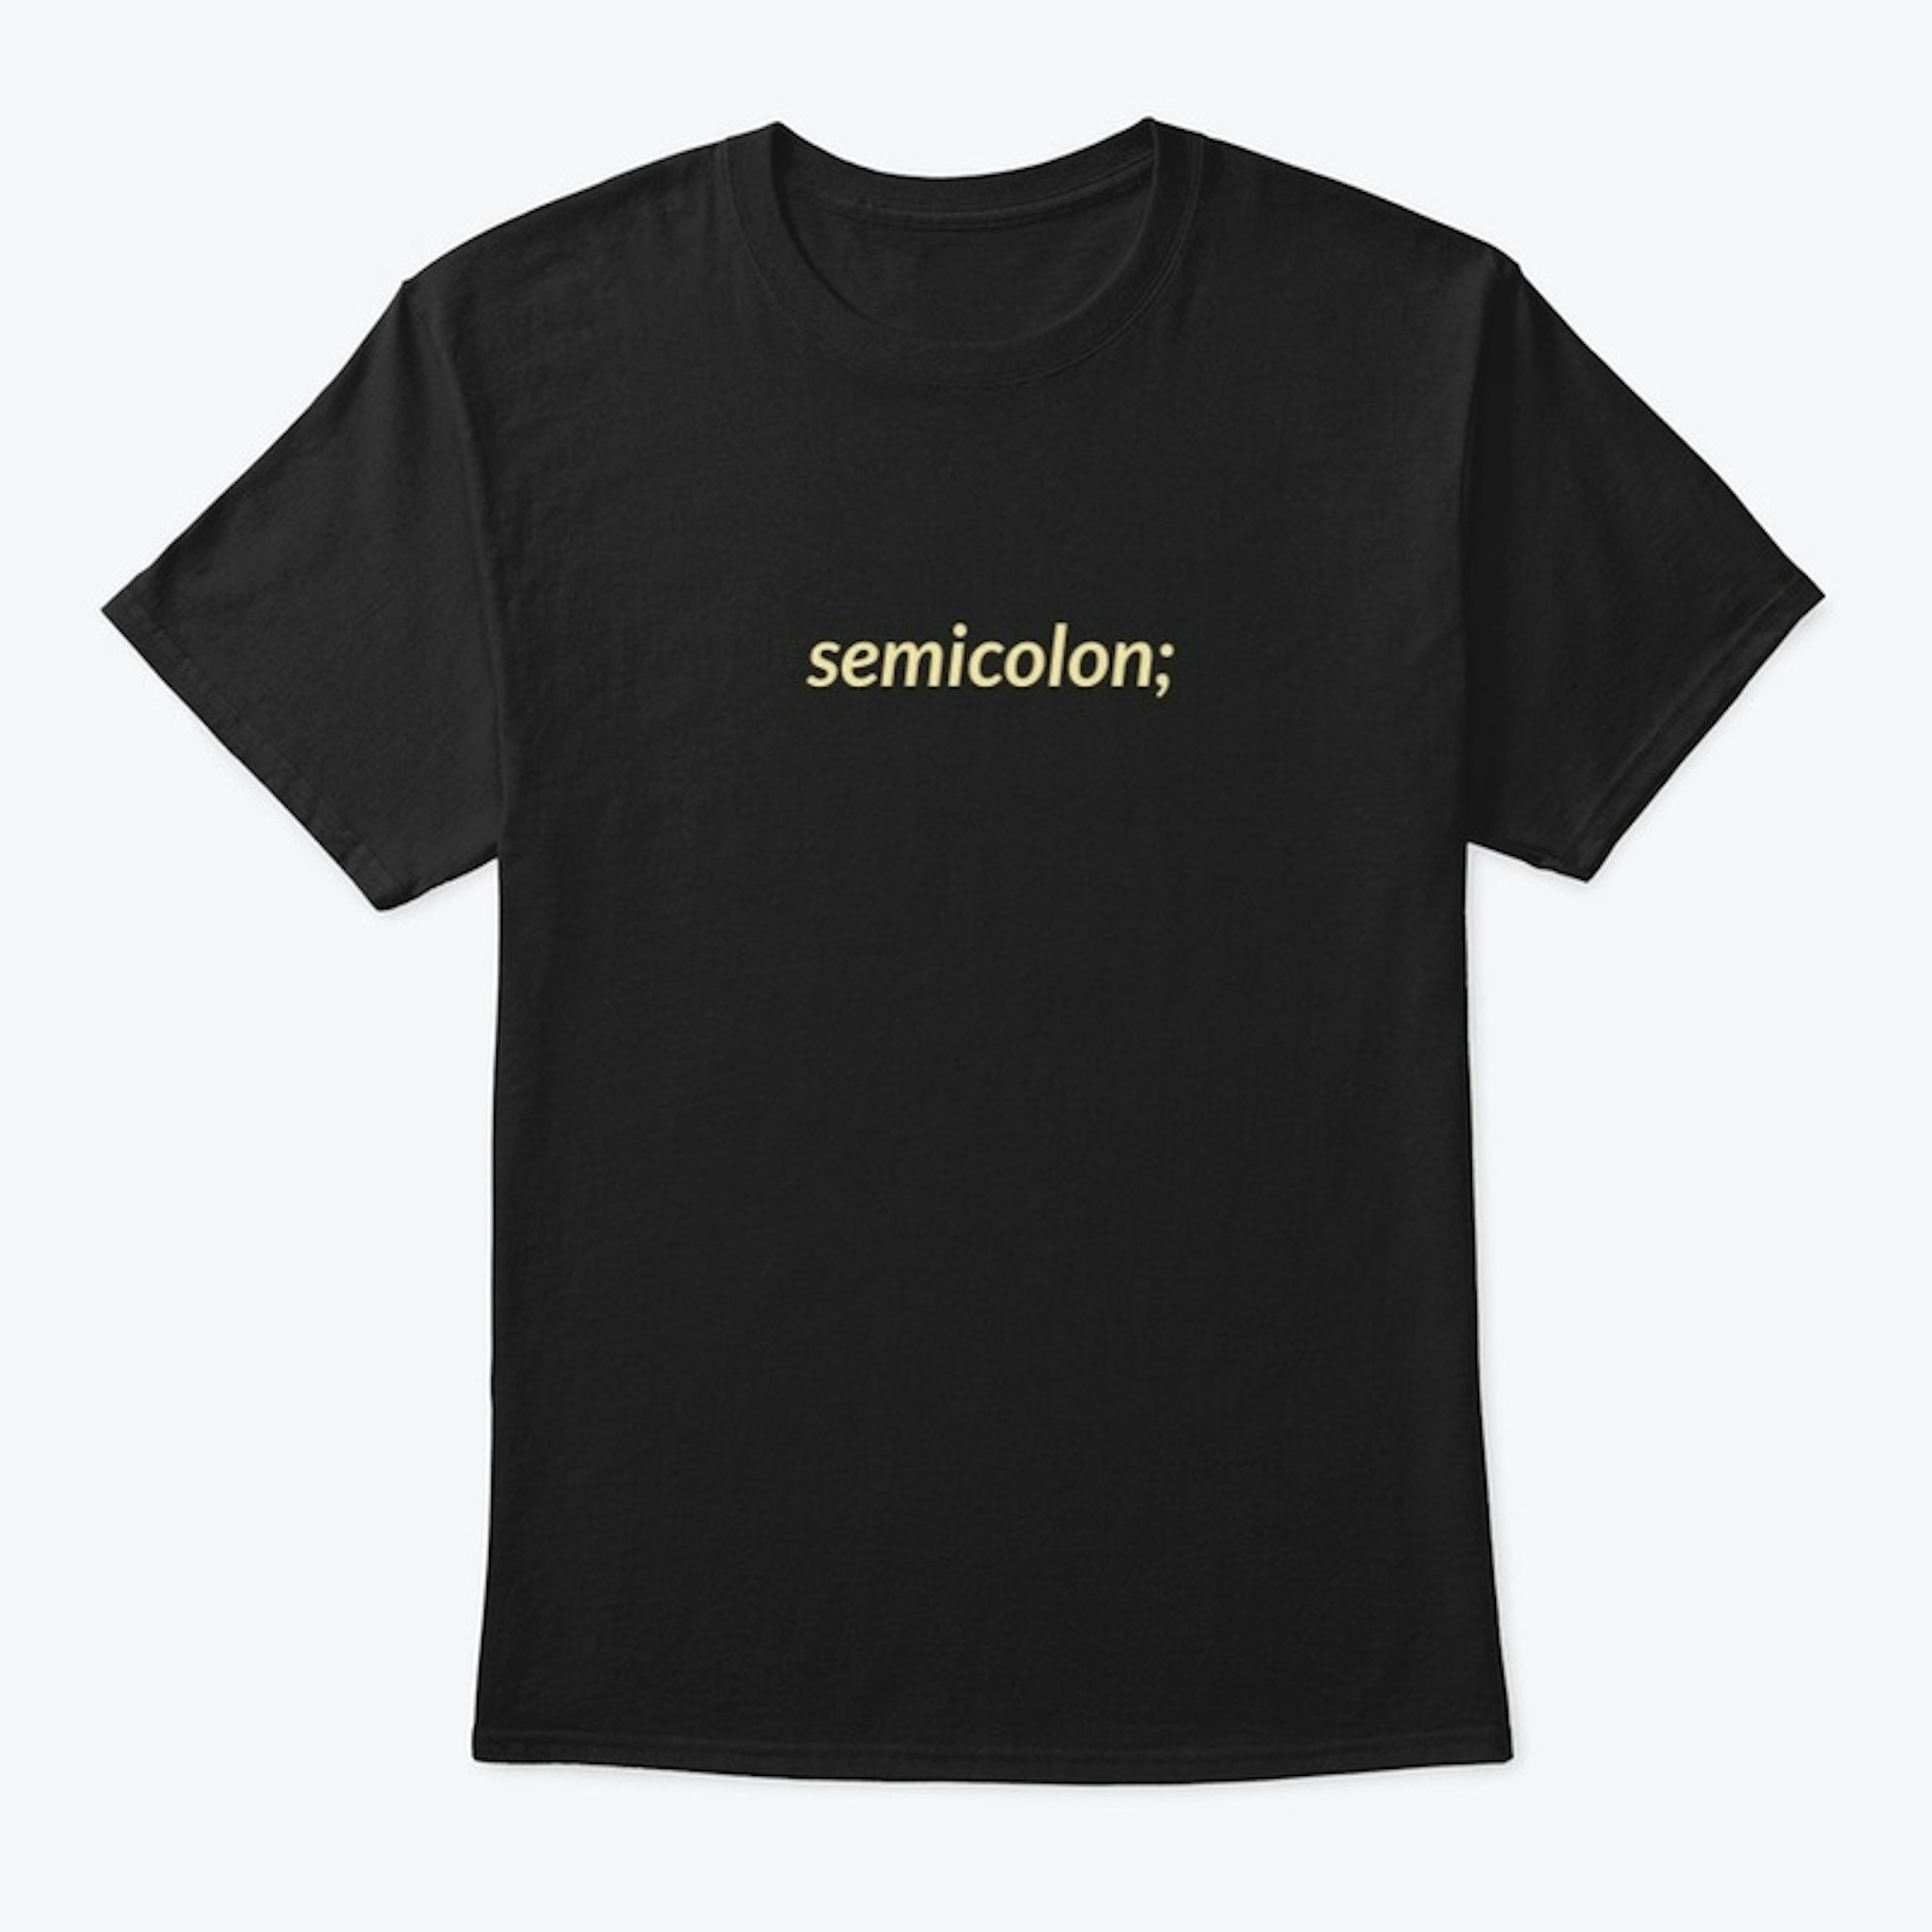 semicolon;